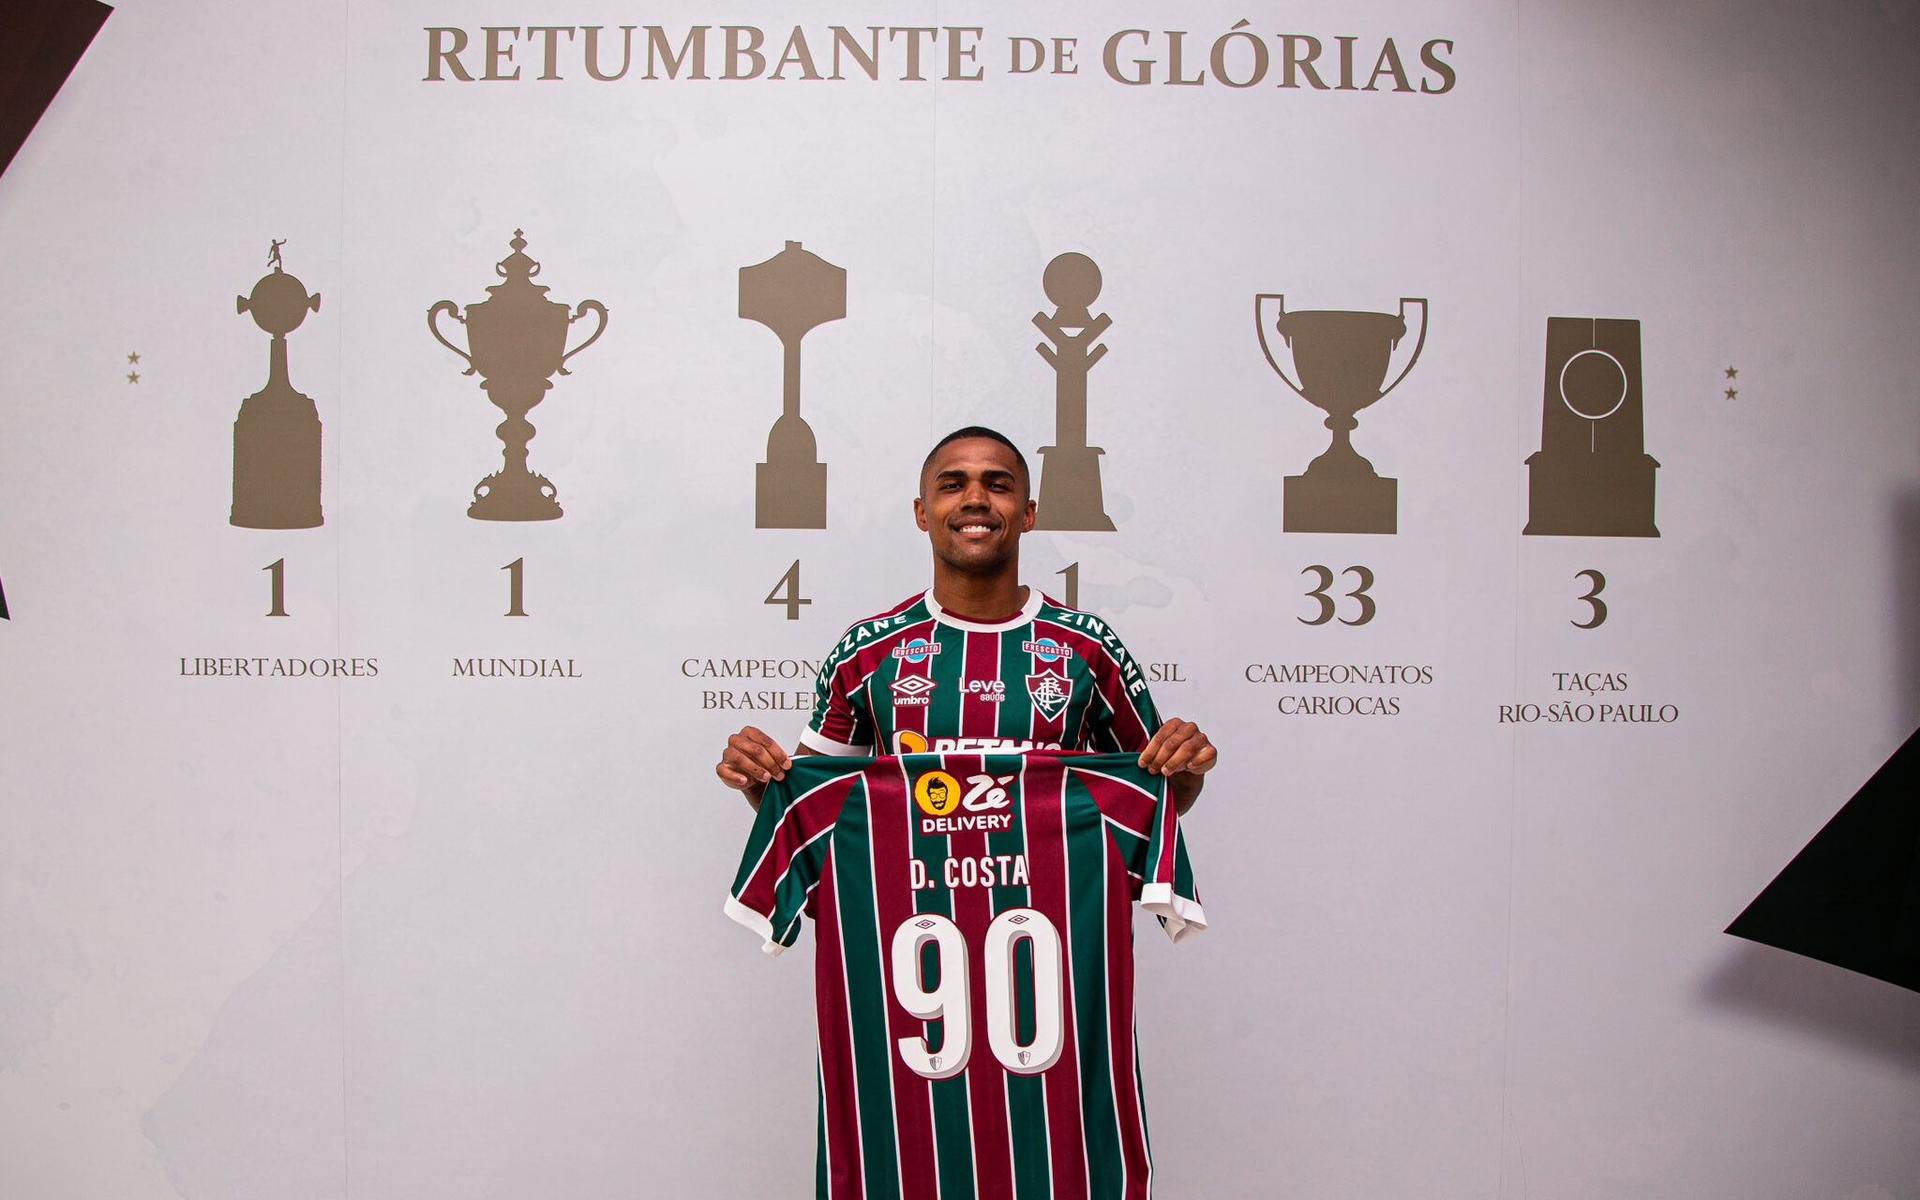 Douglas-Costa-Fluminense-aspect-ratio-512-320